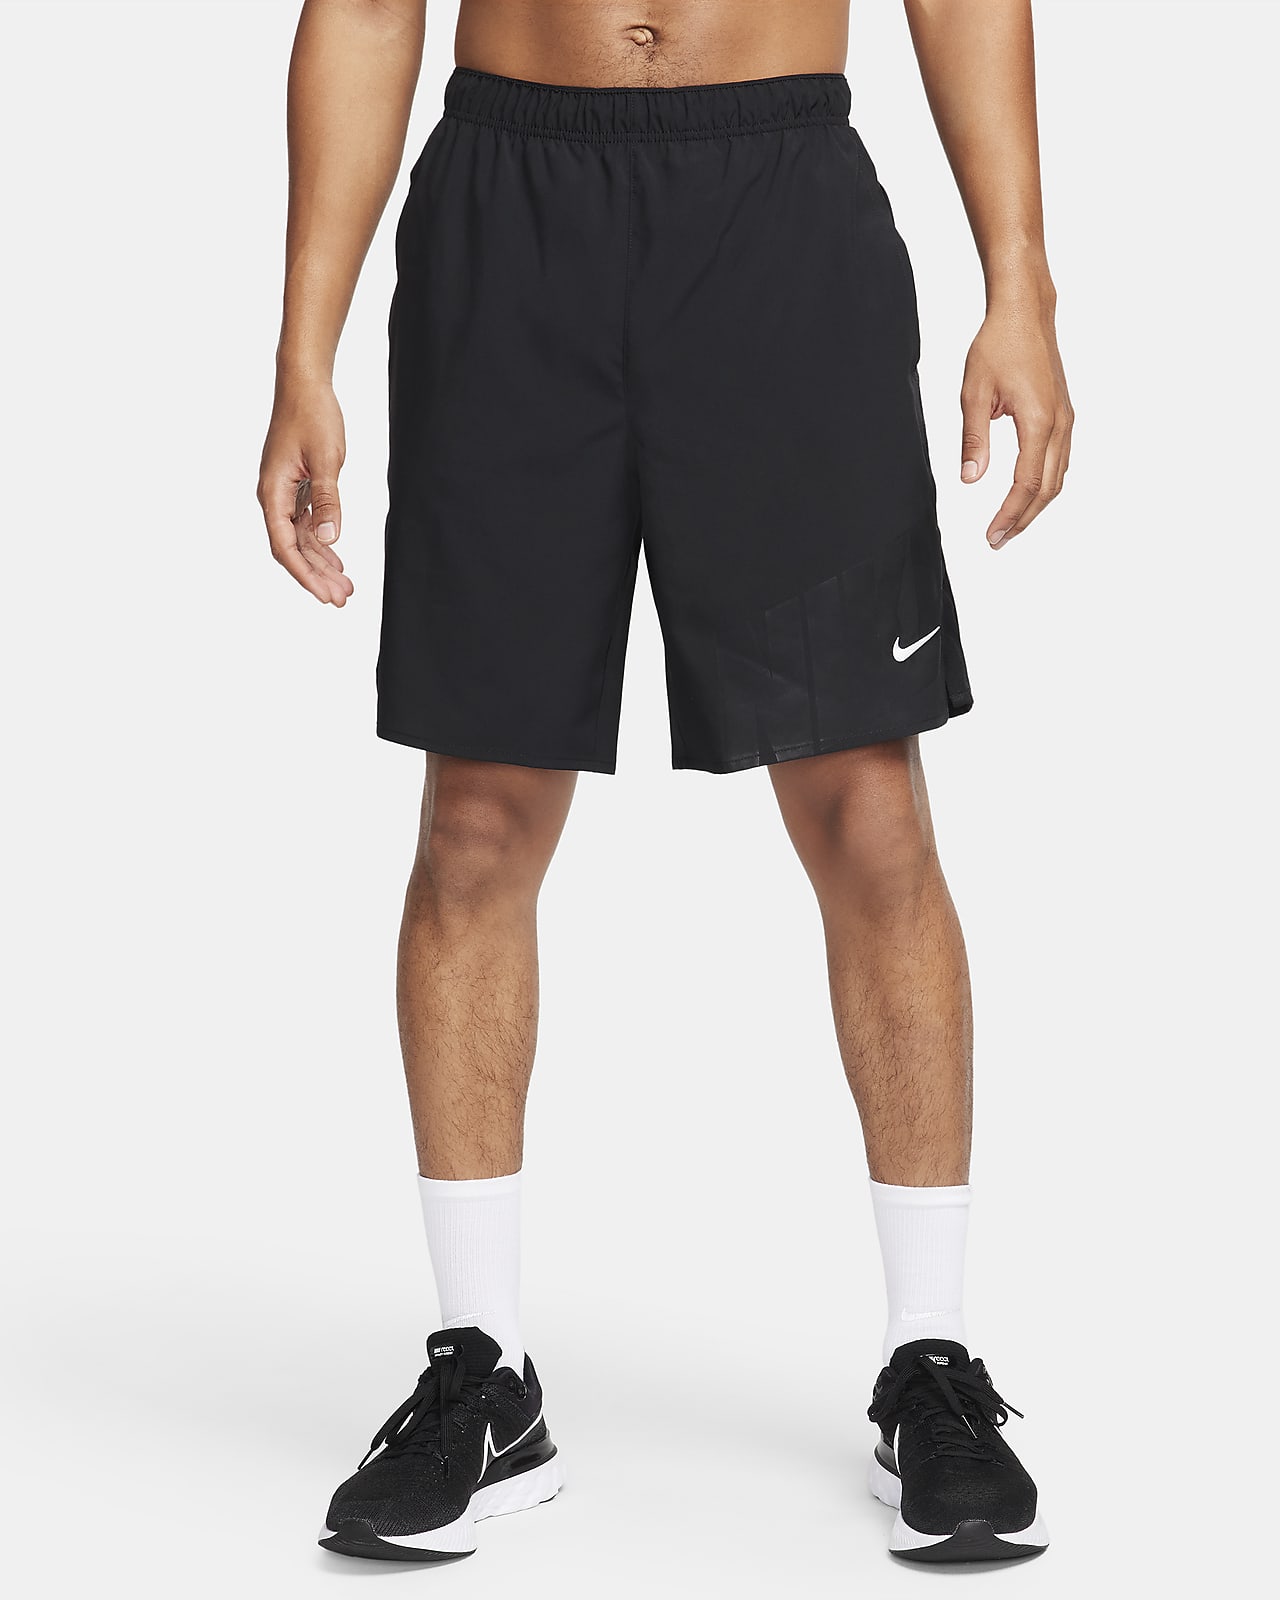 Męskie spodenki bez podszewki do biegania Dri-FIT Nike Challenger 23 cm